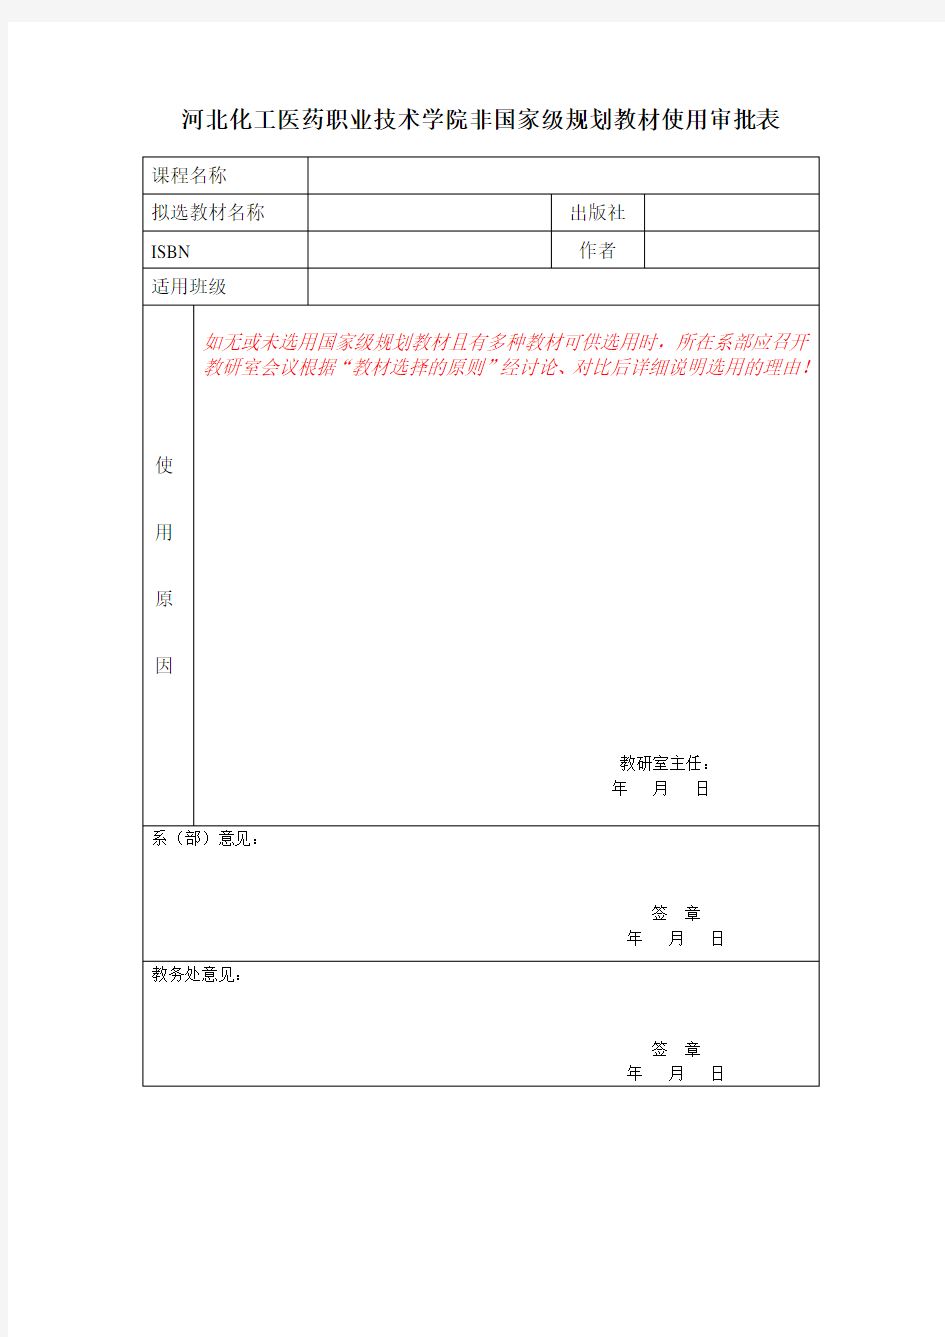 河北化工医药职业技术学院非国家级规划教材使用审批表